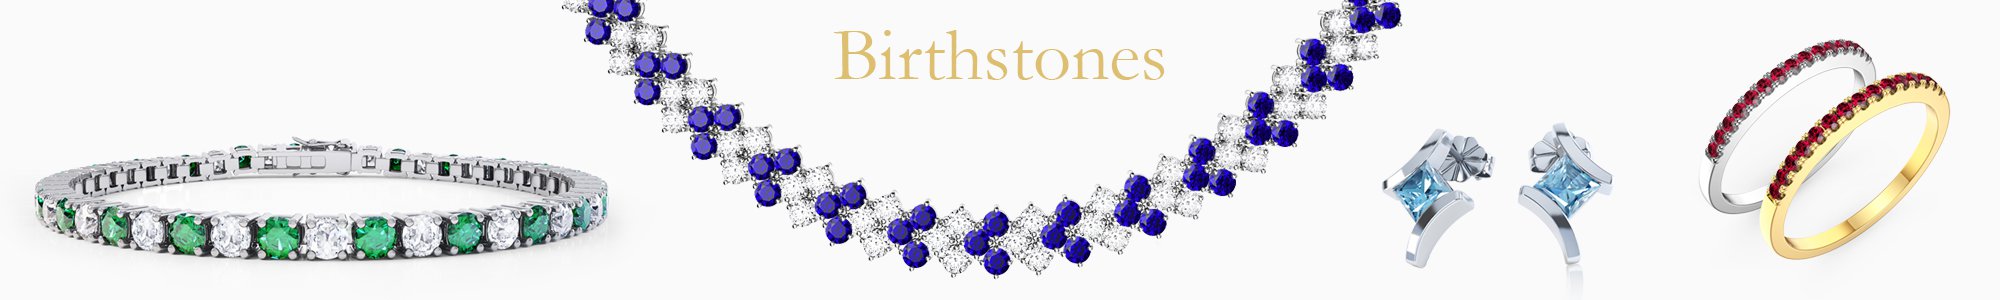 Birthstone Jewelry - from Diamond studs to gemstone drops